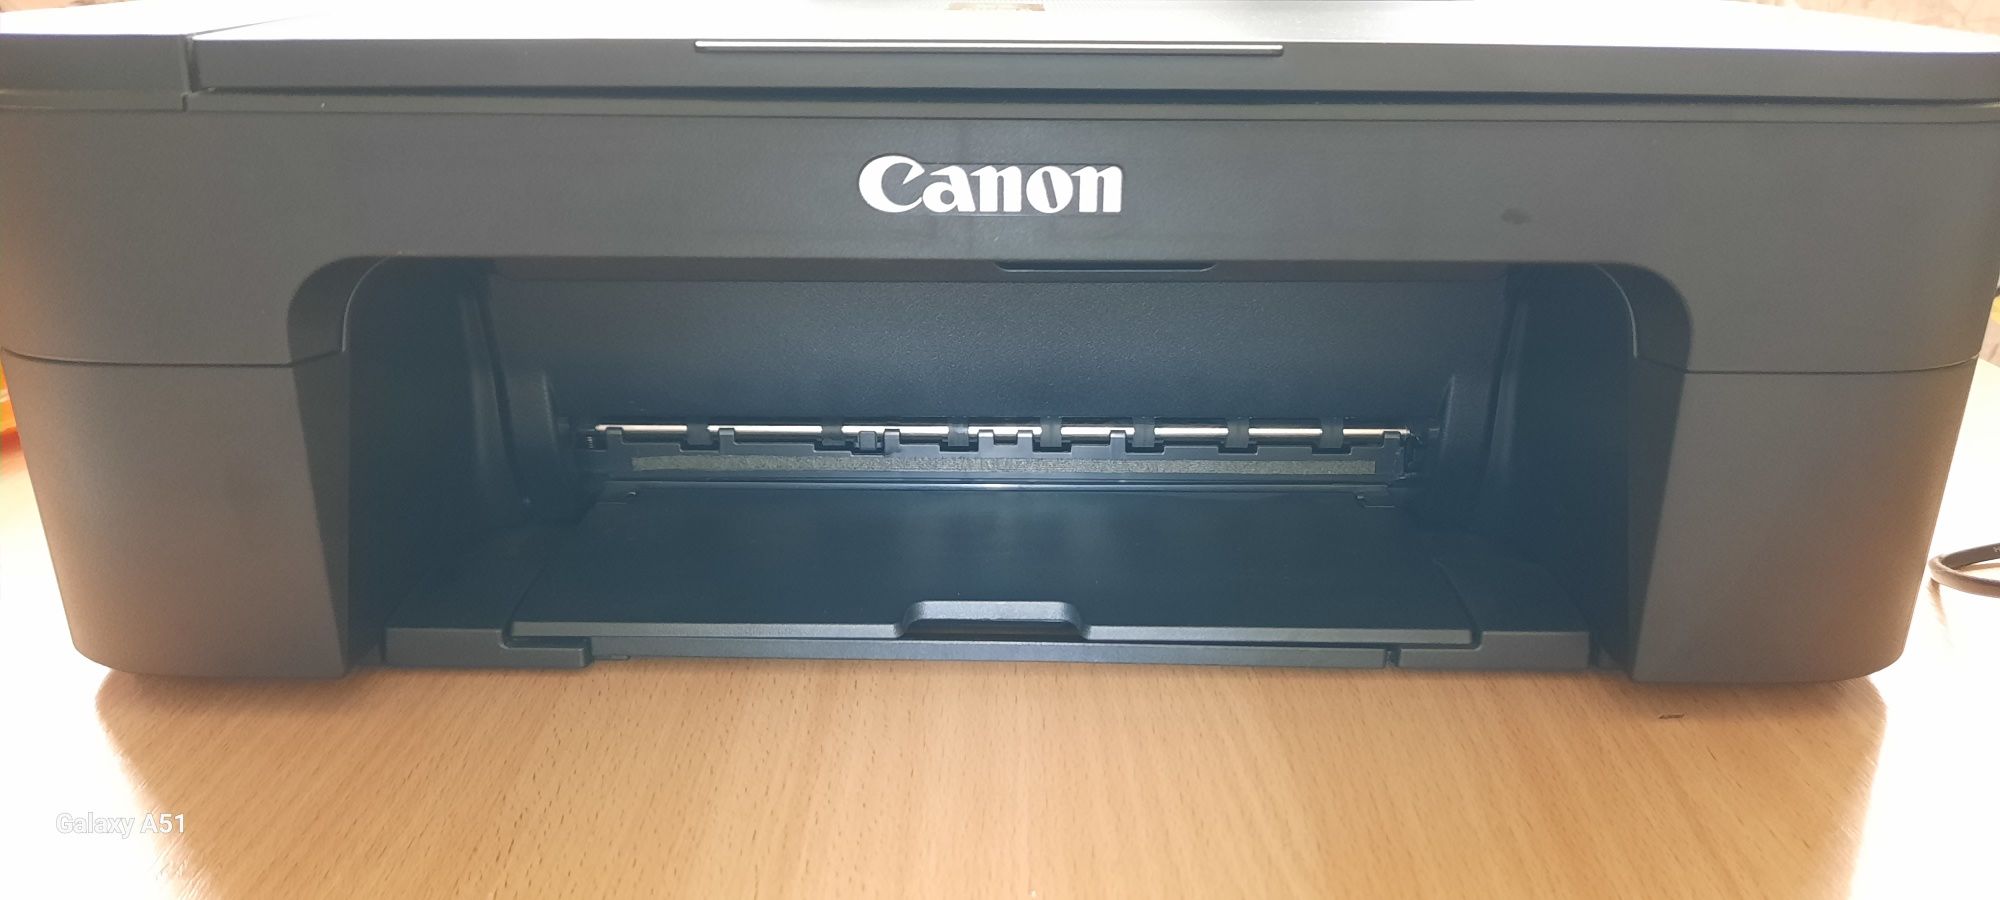 Принтер Canon ts3350